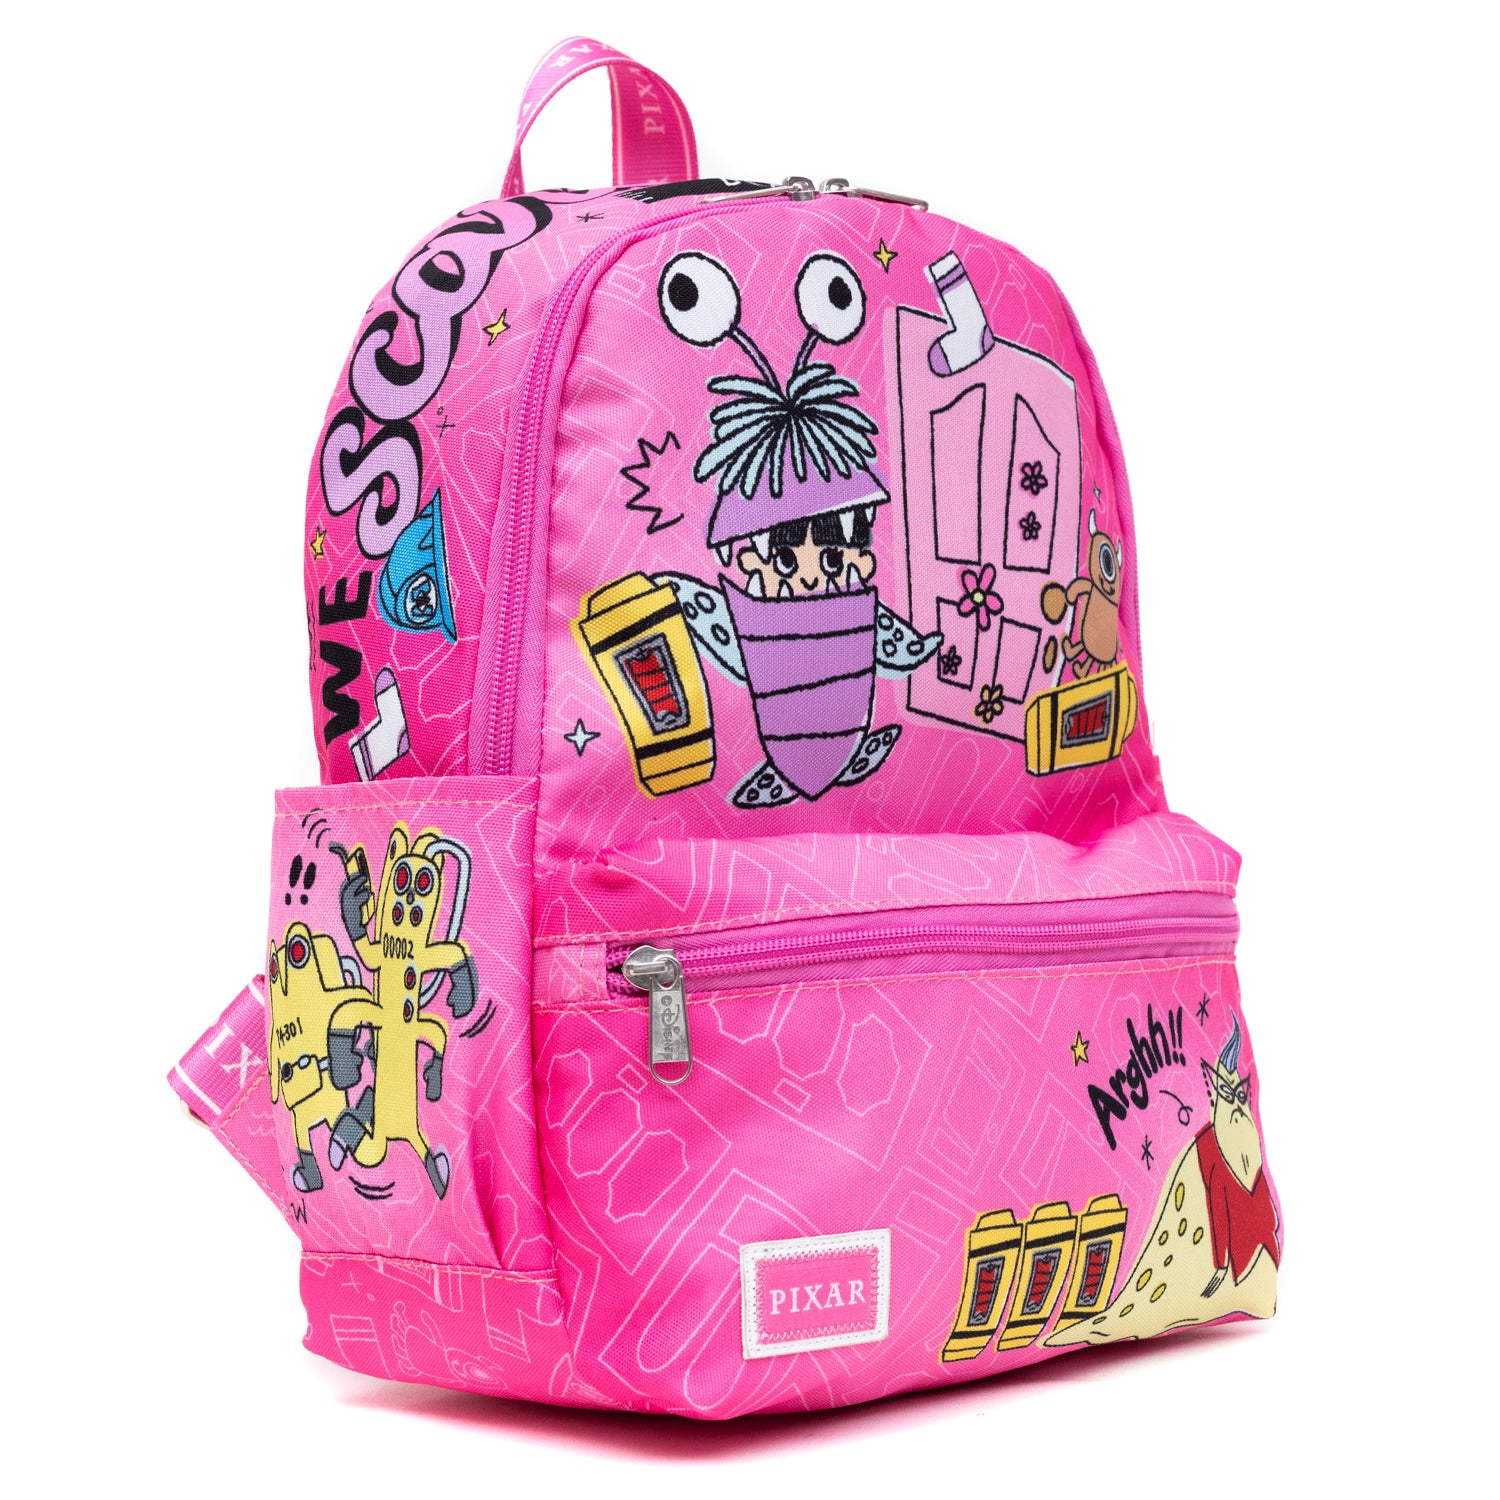 Disney Monsters Inc Backpack, Disney Backpack, Monsters Inc Bag